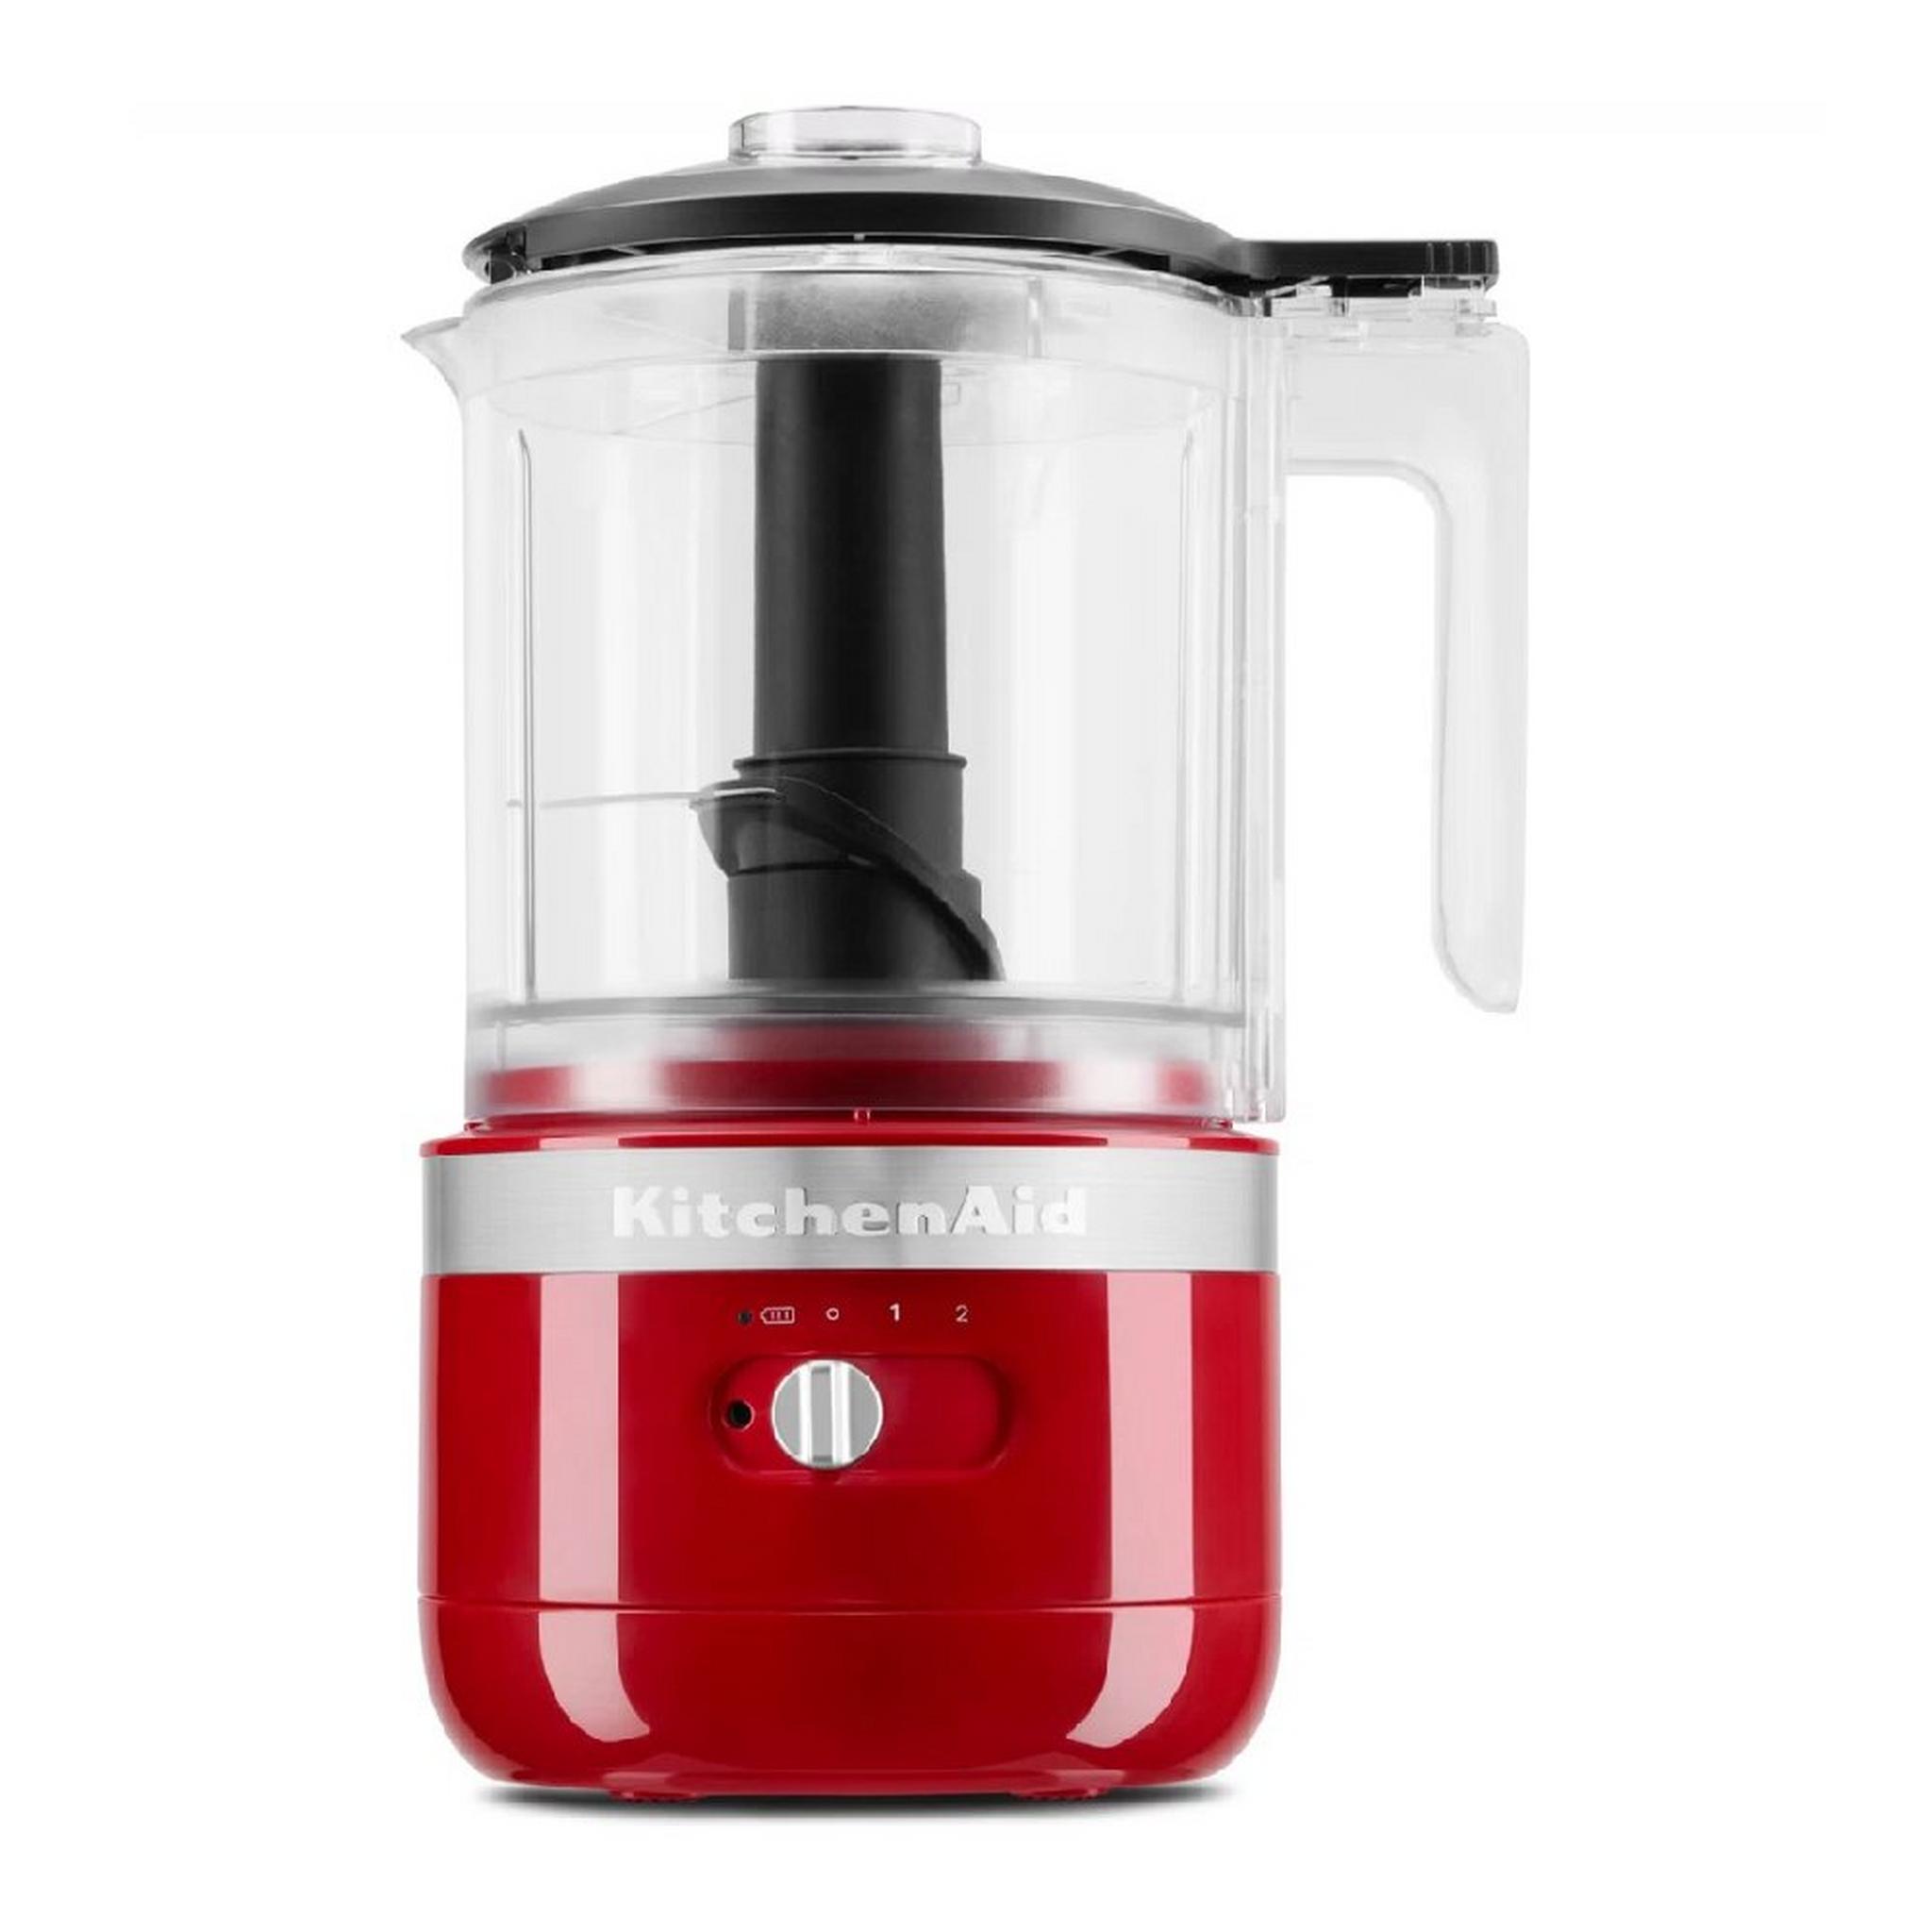 KitchenAid Cordless Food Chopper, 1.8L, 5KFCB519BER - Red